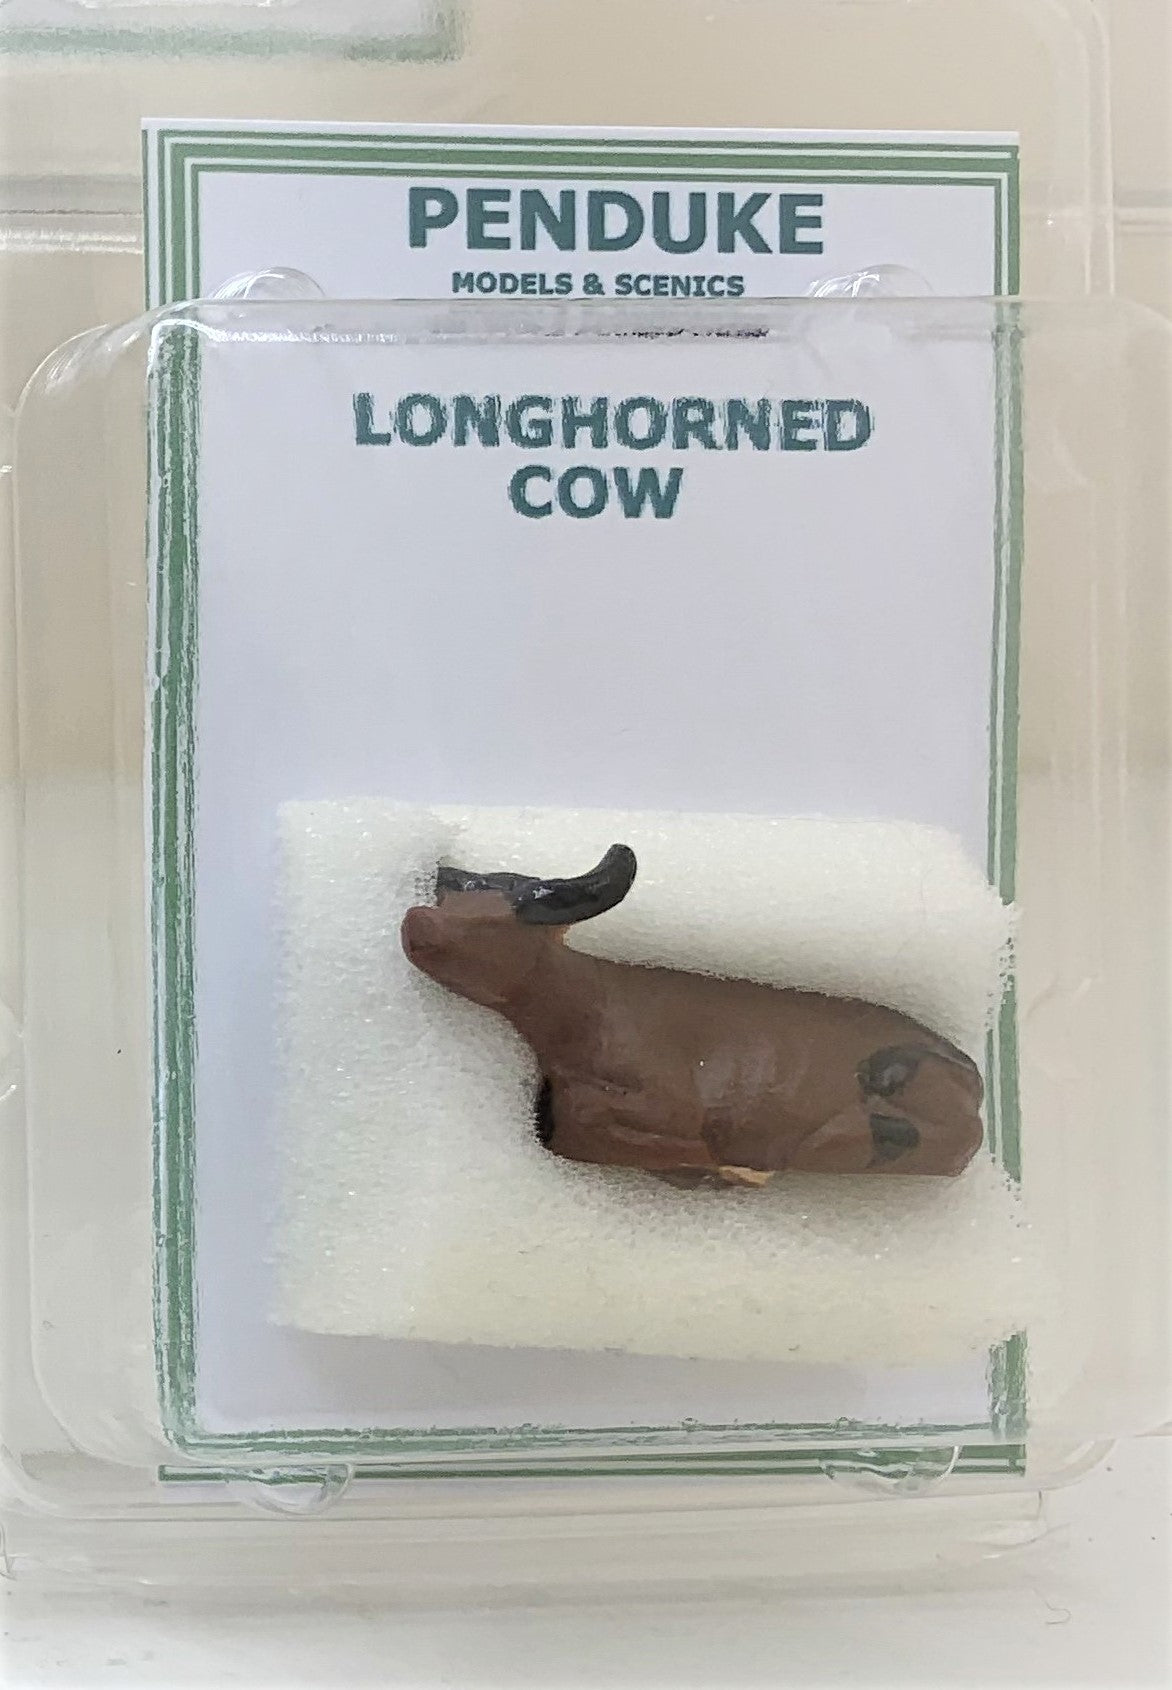 LONGHORN COW OO/H0 GAUGE